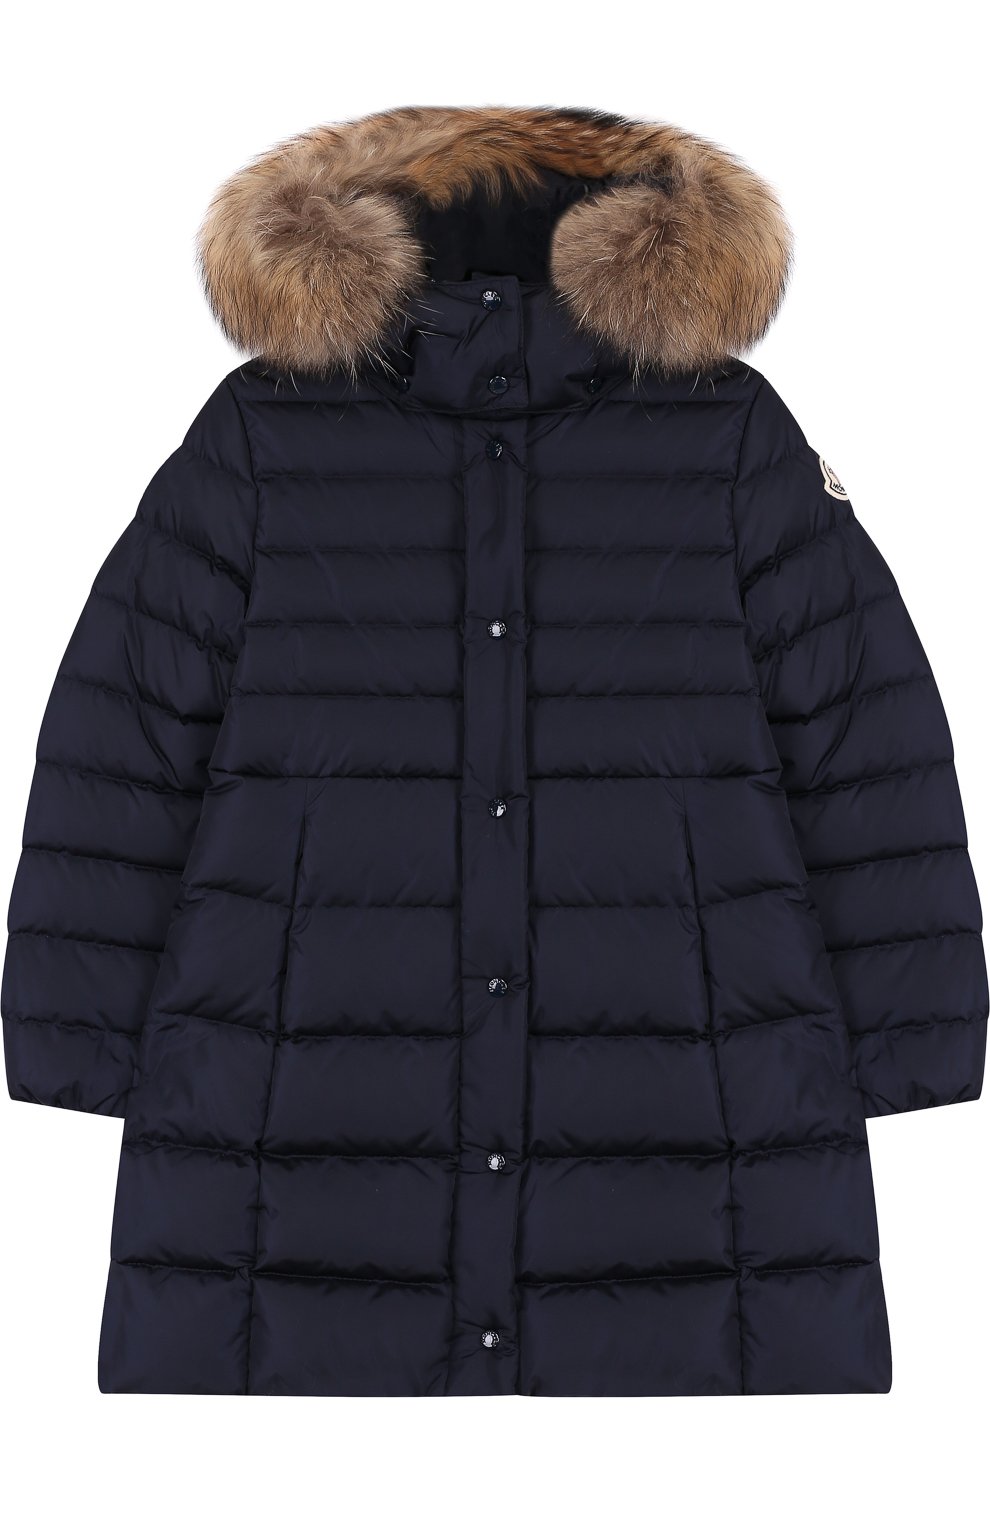 Пуховое пальто на молнии с капюшоном и меховой отделкой Moncler Enfant